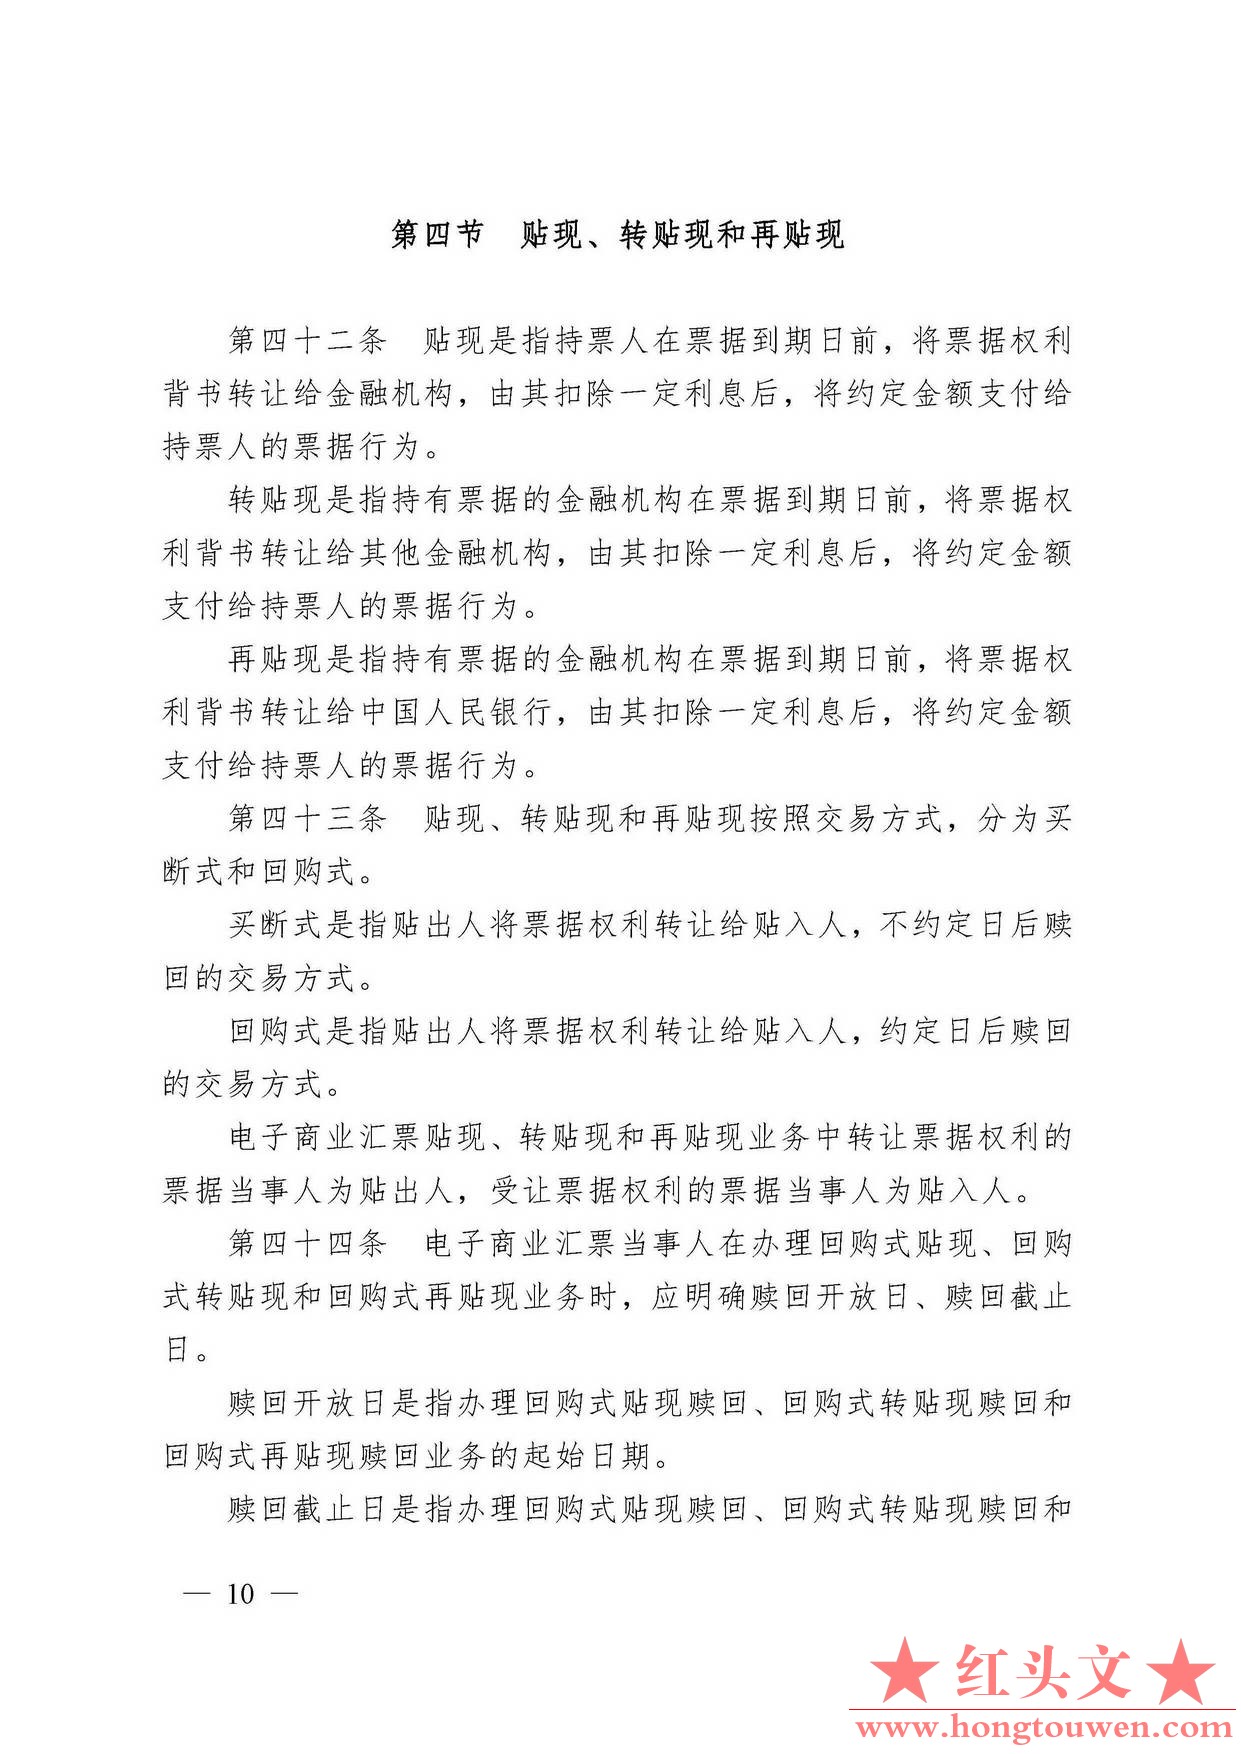 中国人民银行令[2009]2号-电子商业汇票管理办法_页面_10.jpg